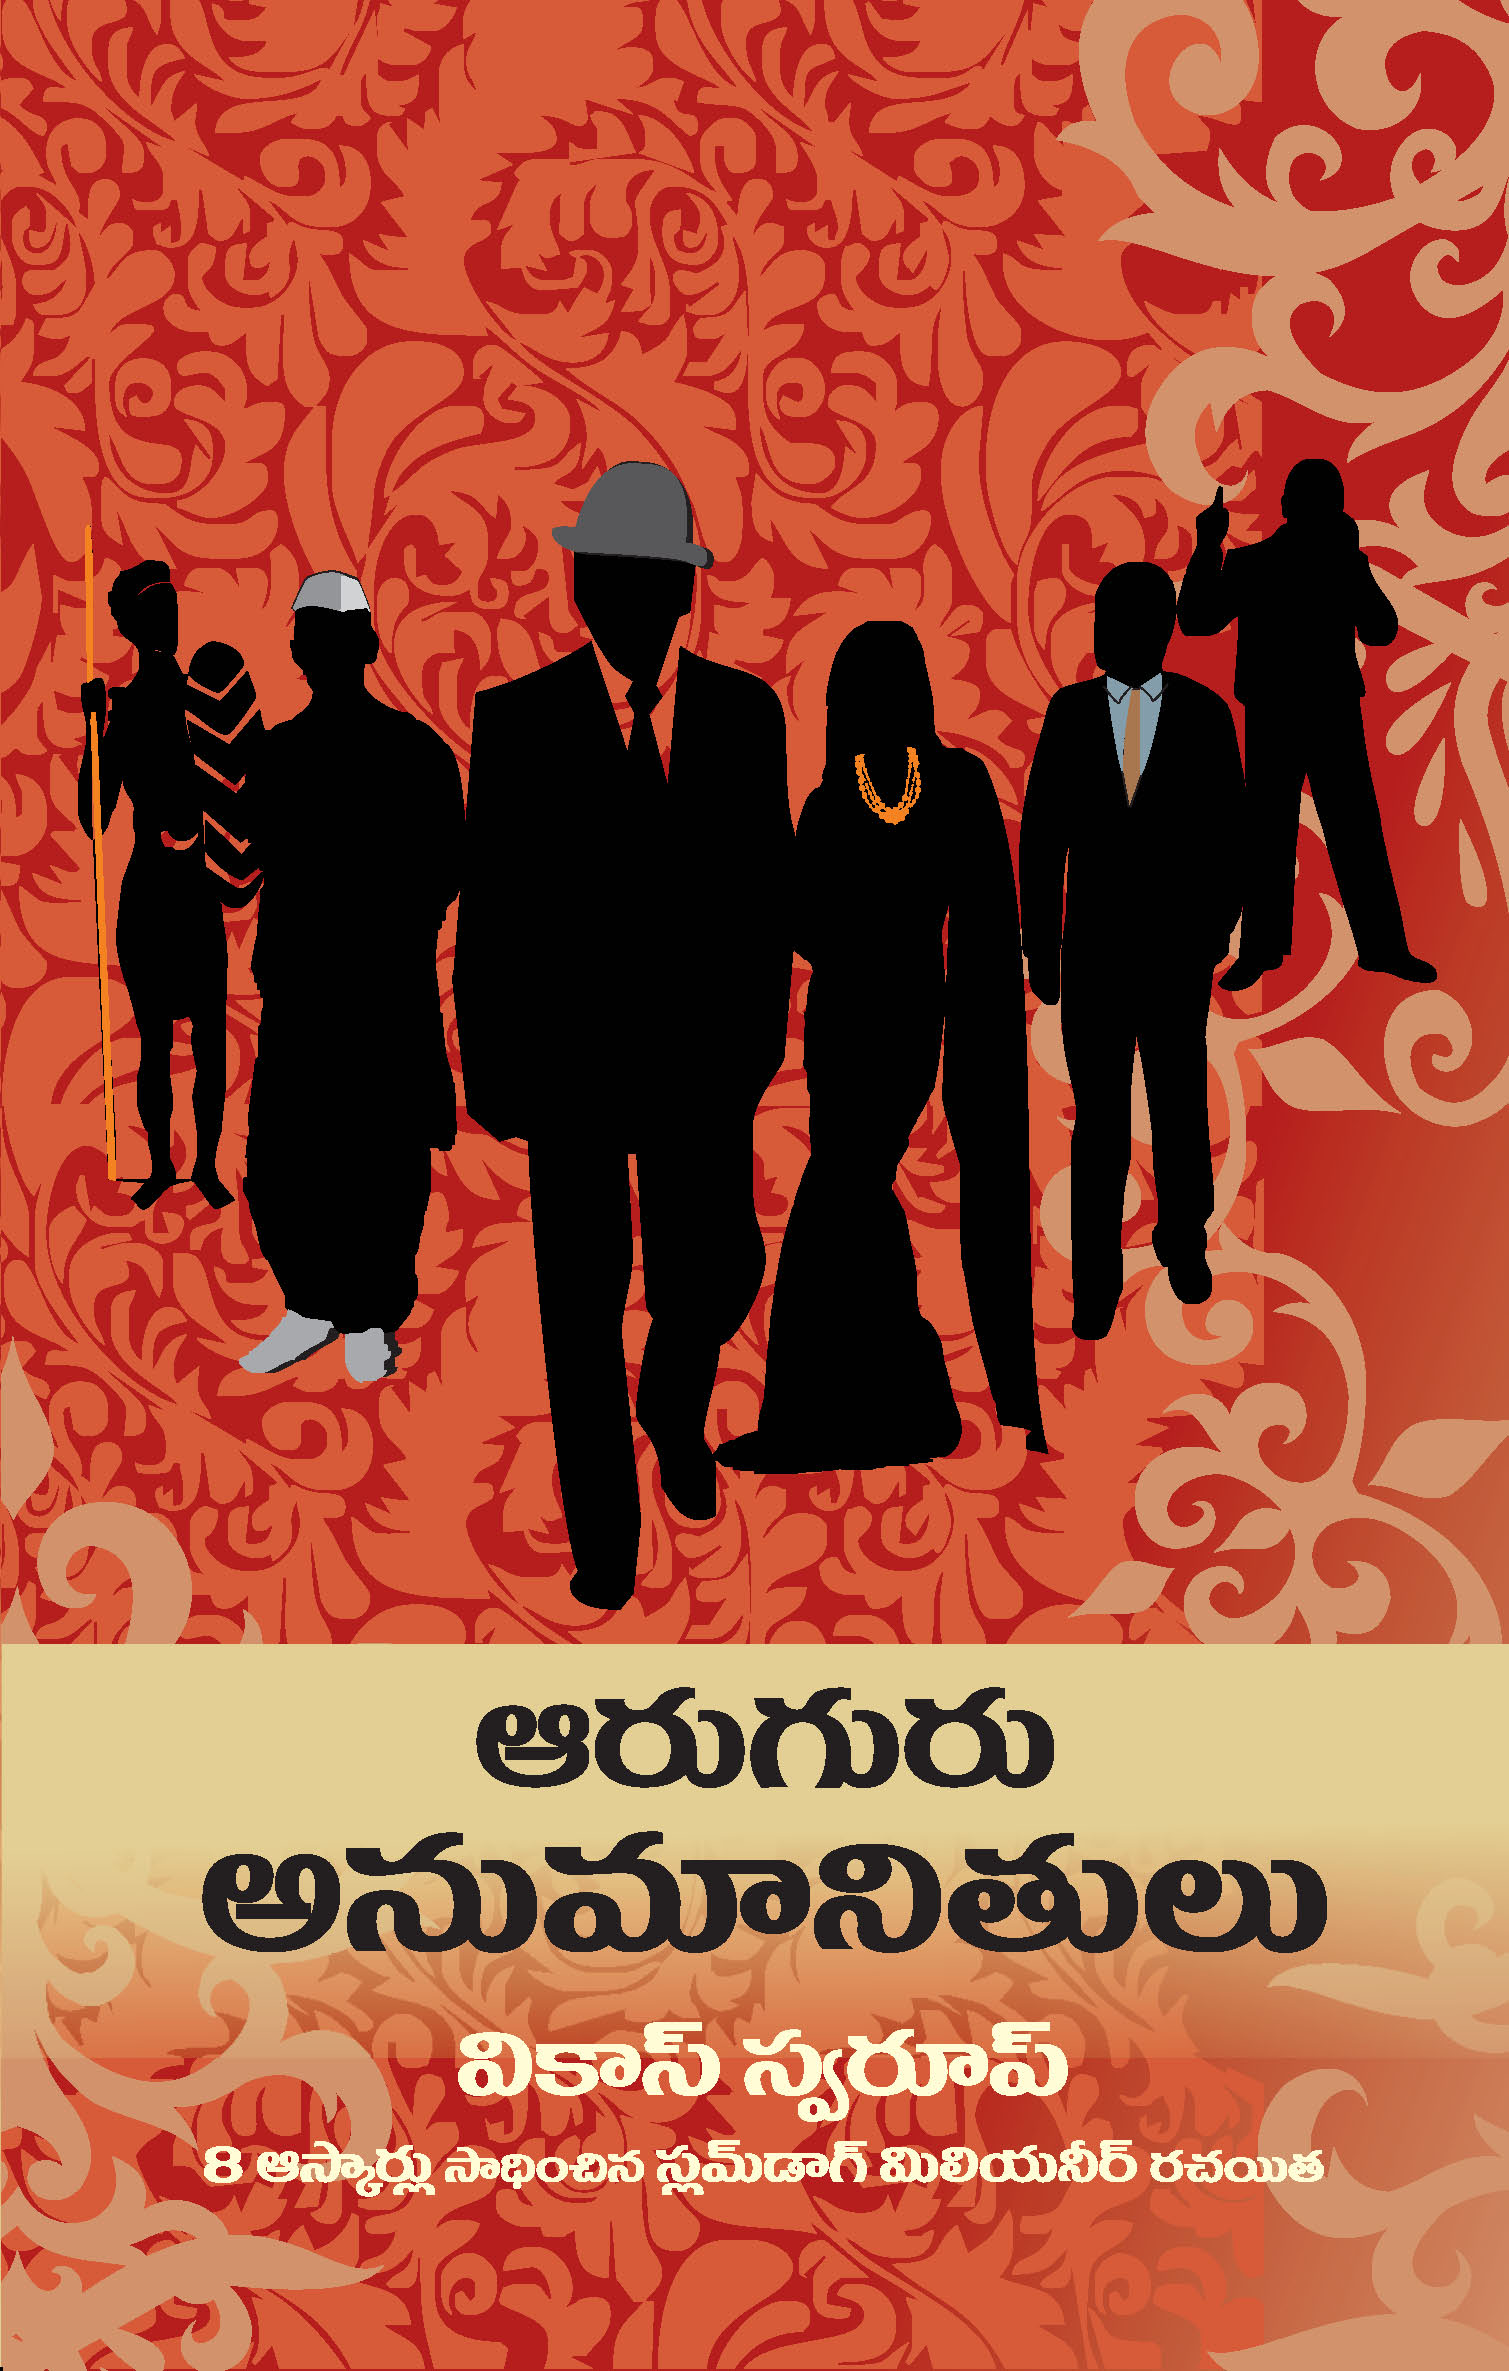 Aaruguru Anumanithulu (Tr. Six Suspects)